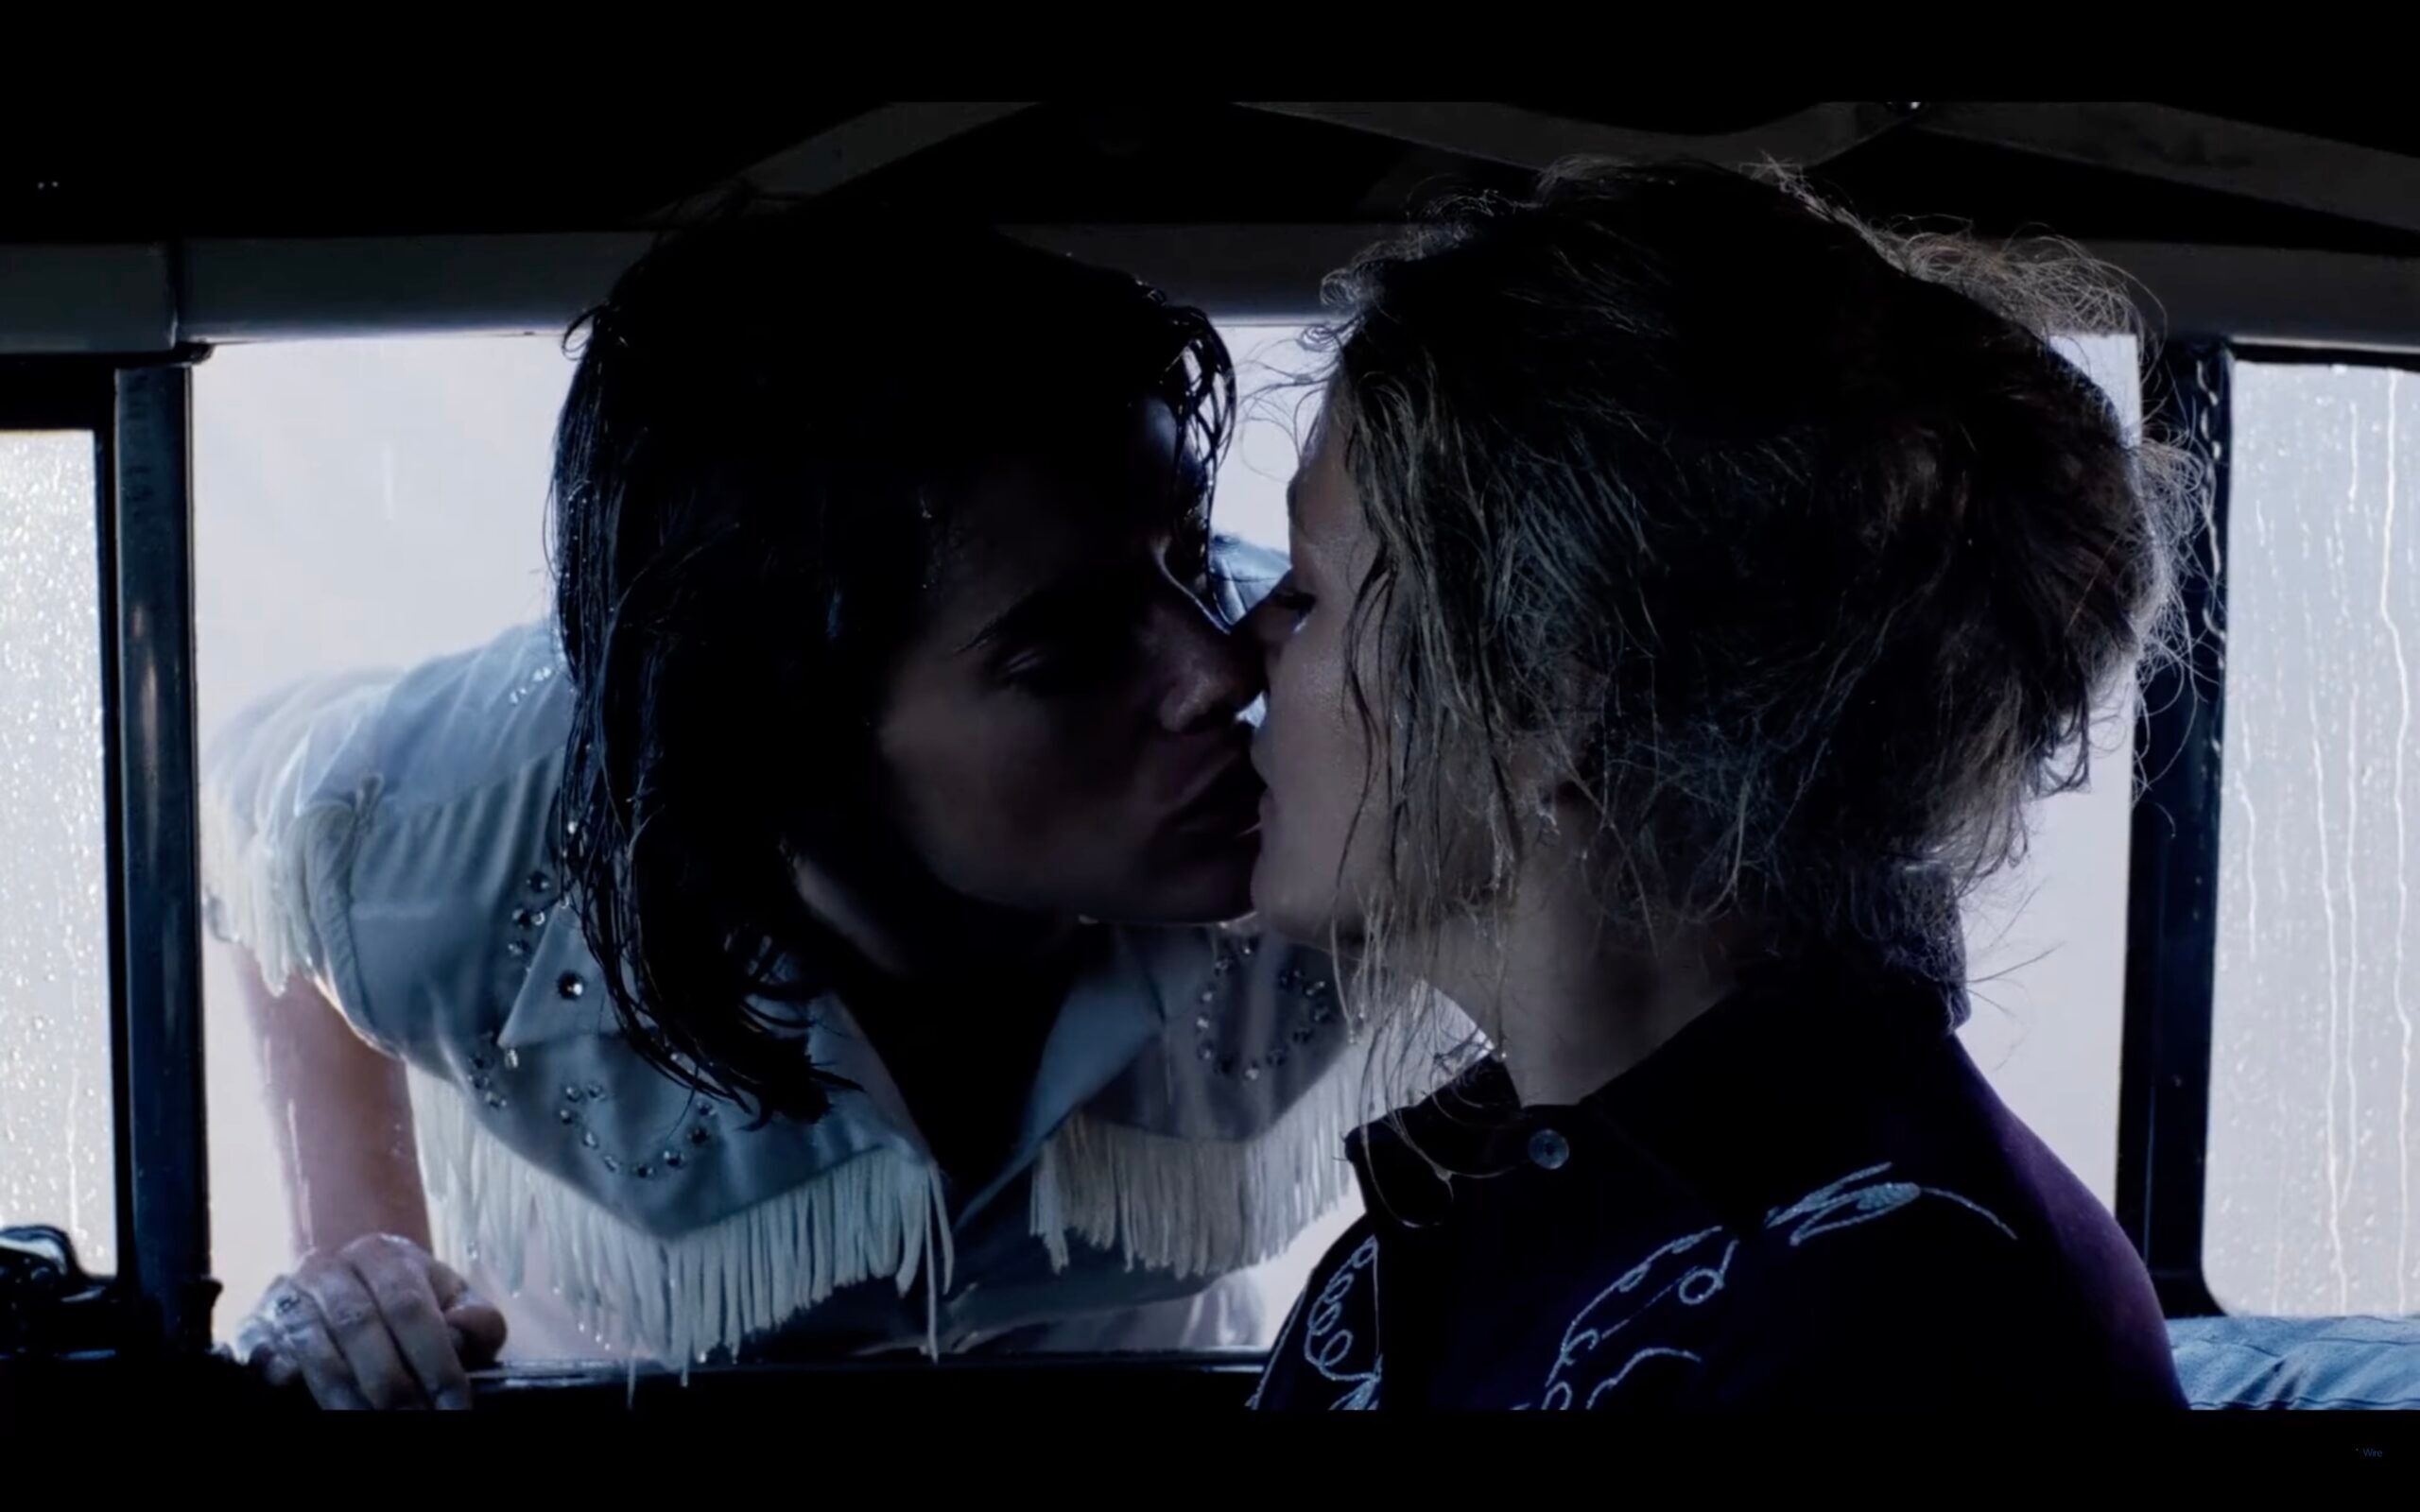 Kissing scene from "Desert Hearts"